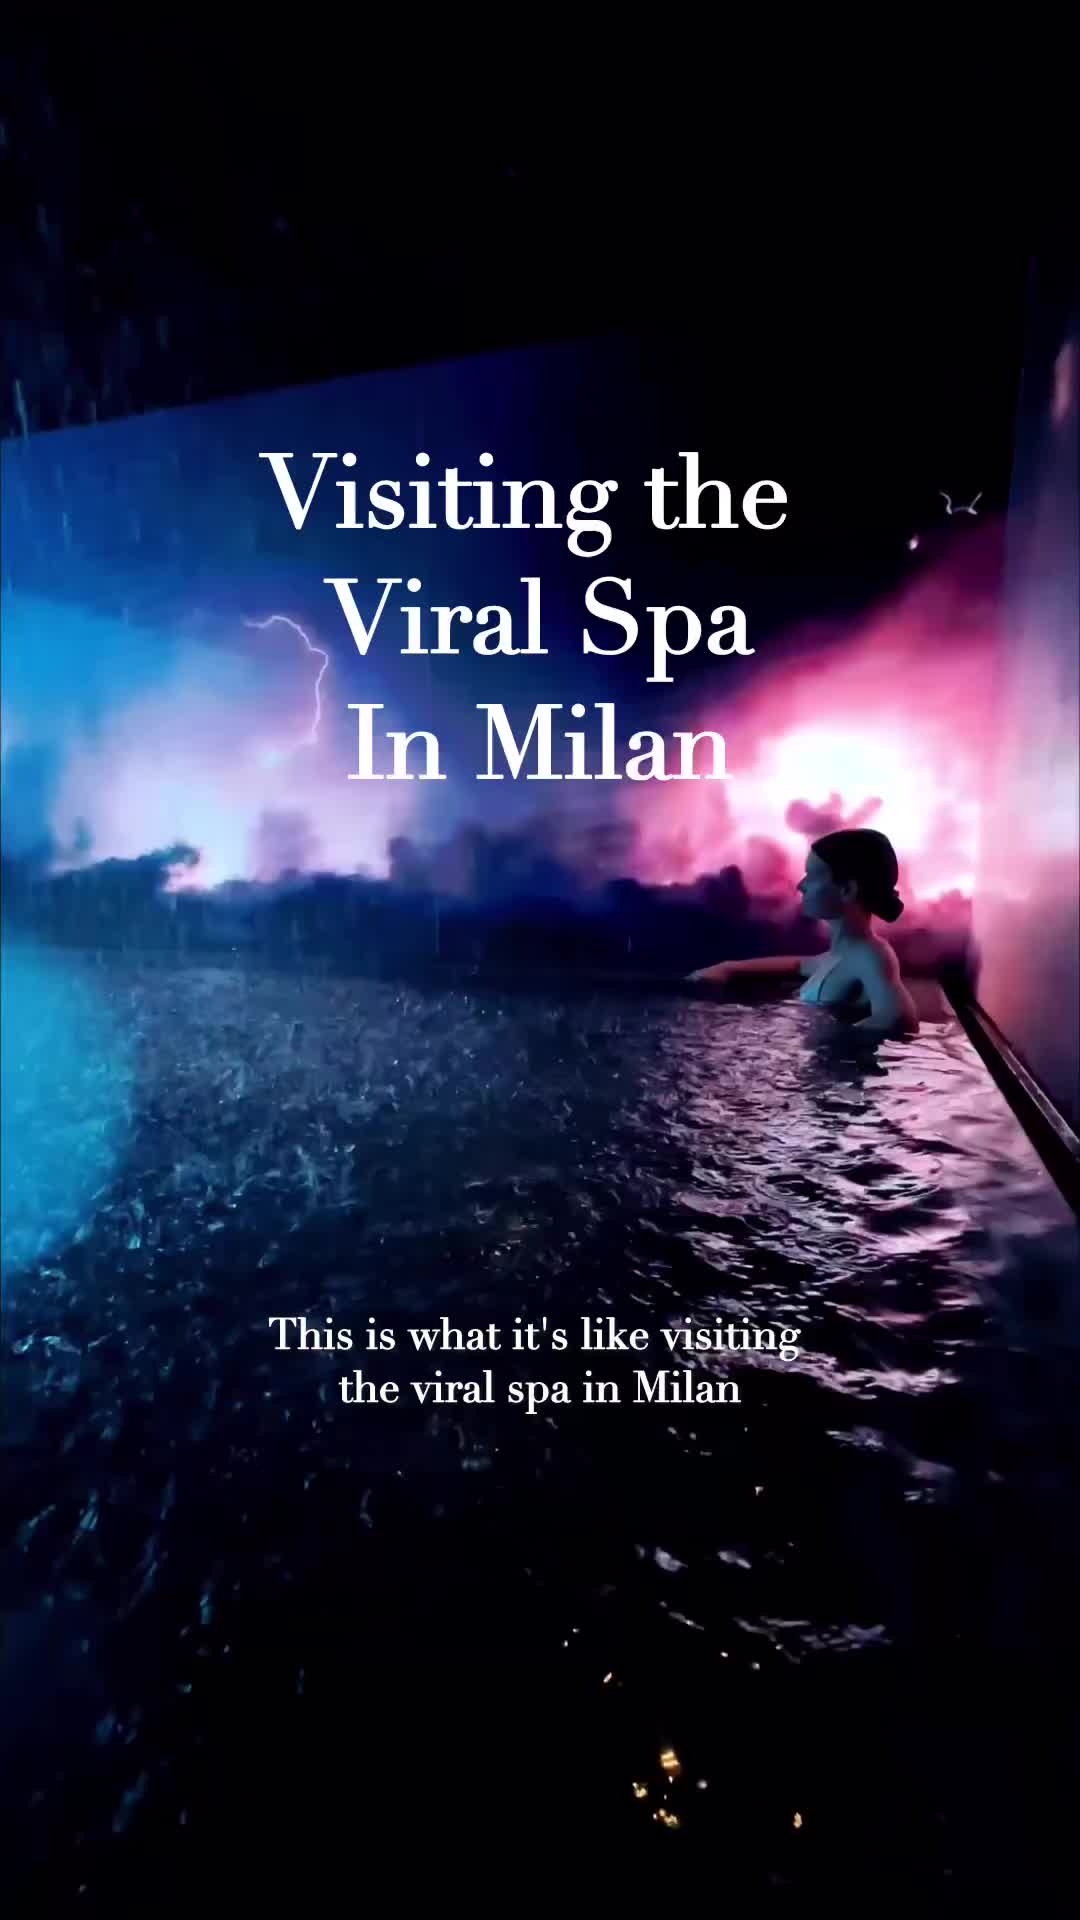 Discover Milan's Viral Spa Experience at QC Termemilano